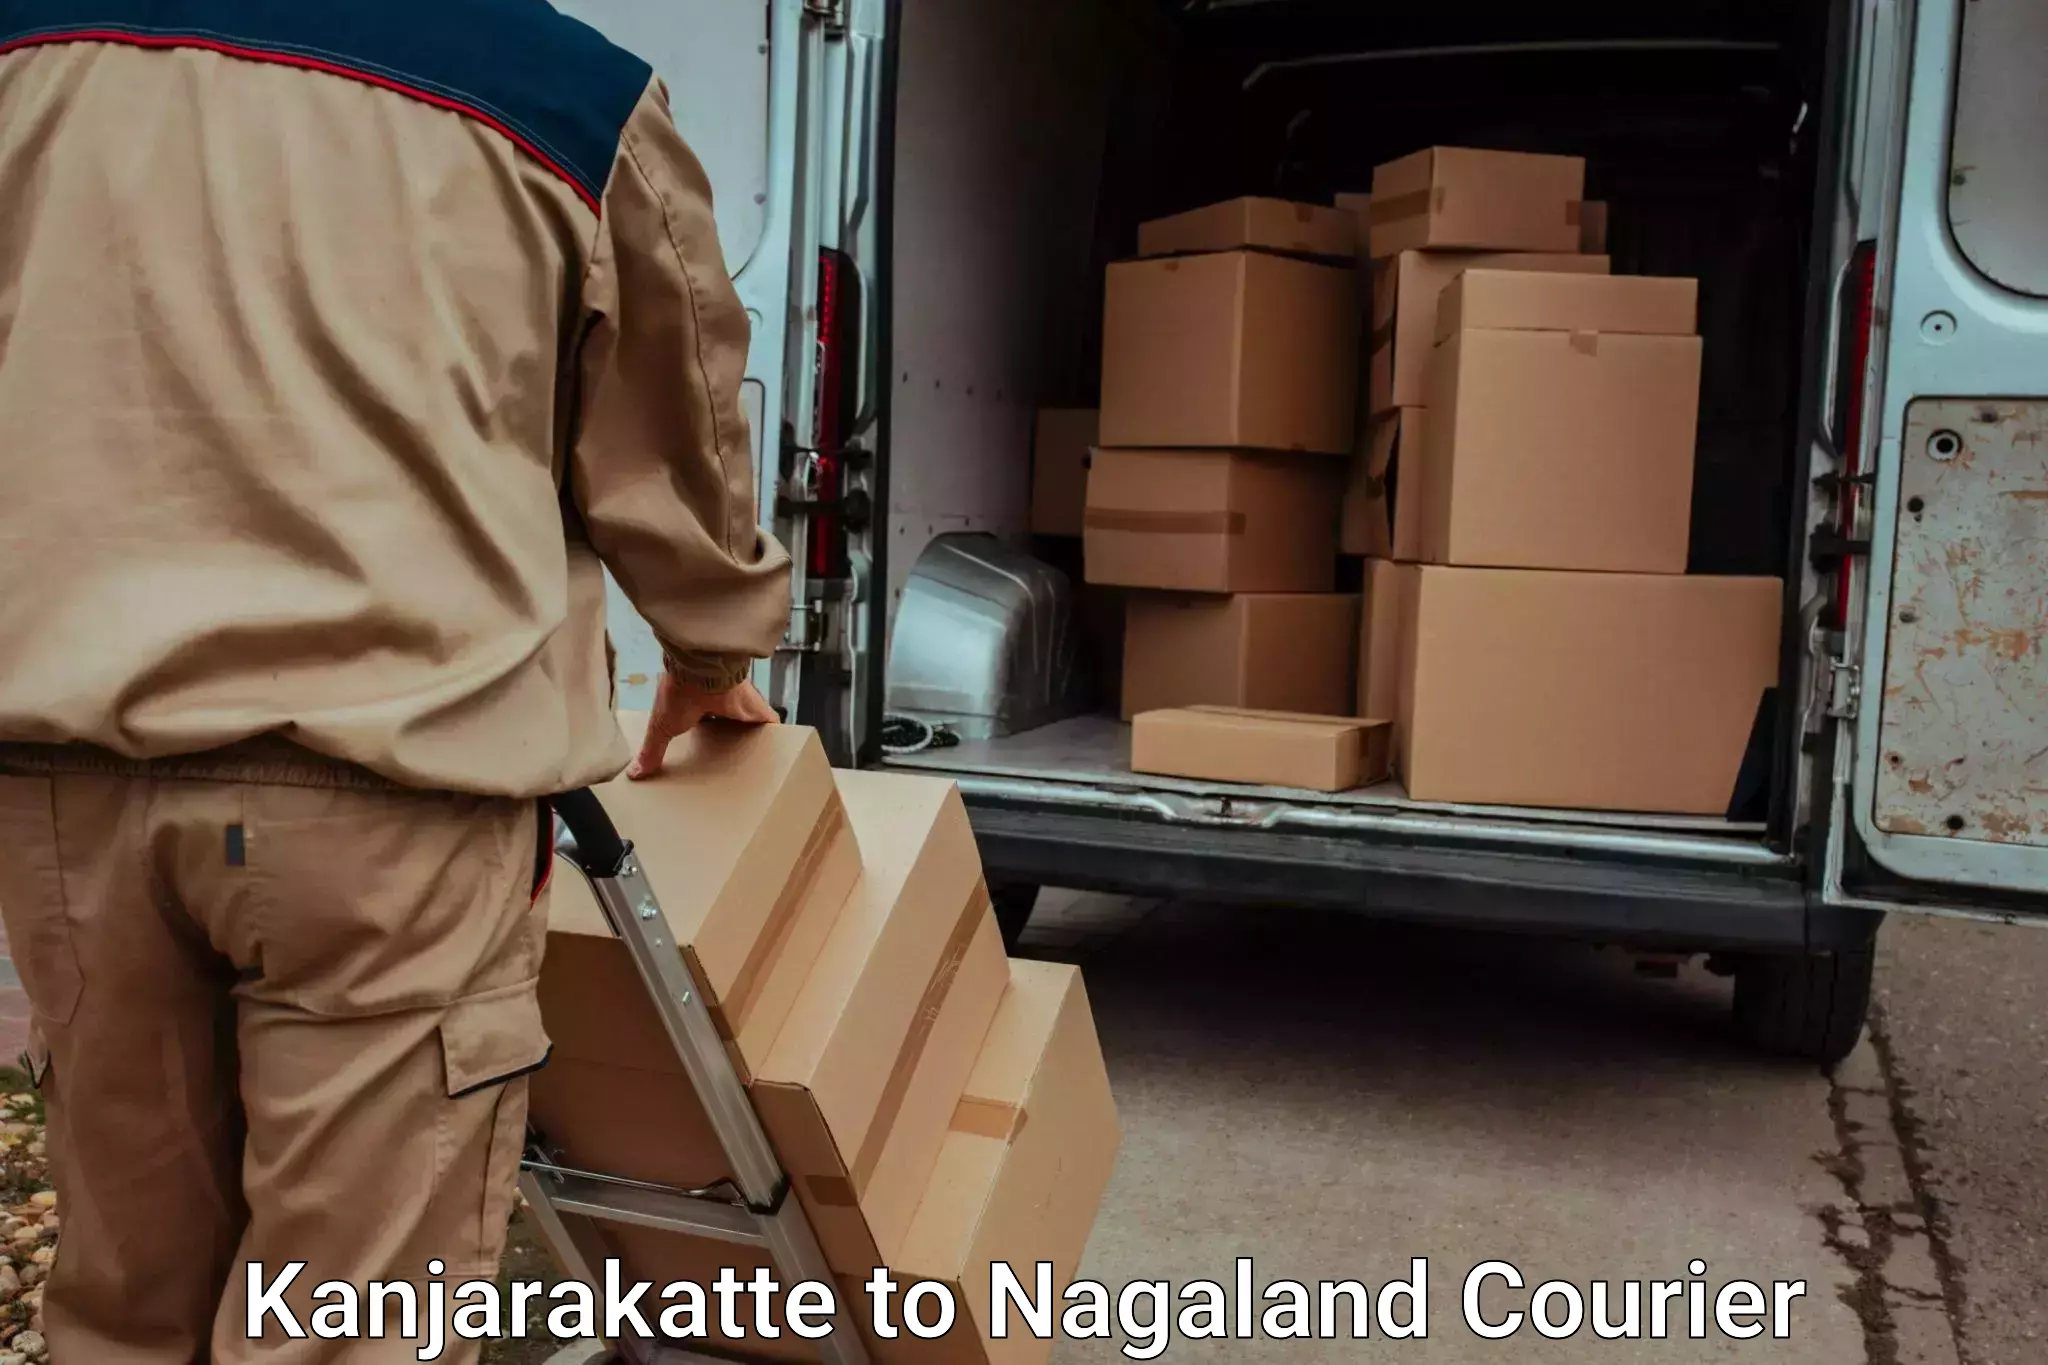 Hassle-free luggage shipping Kanjarakatte to Nagaland